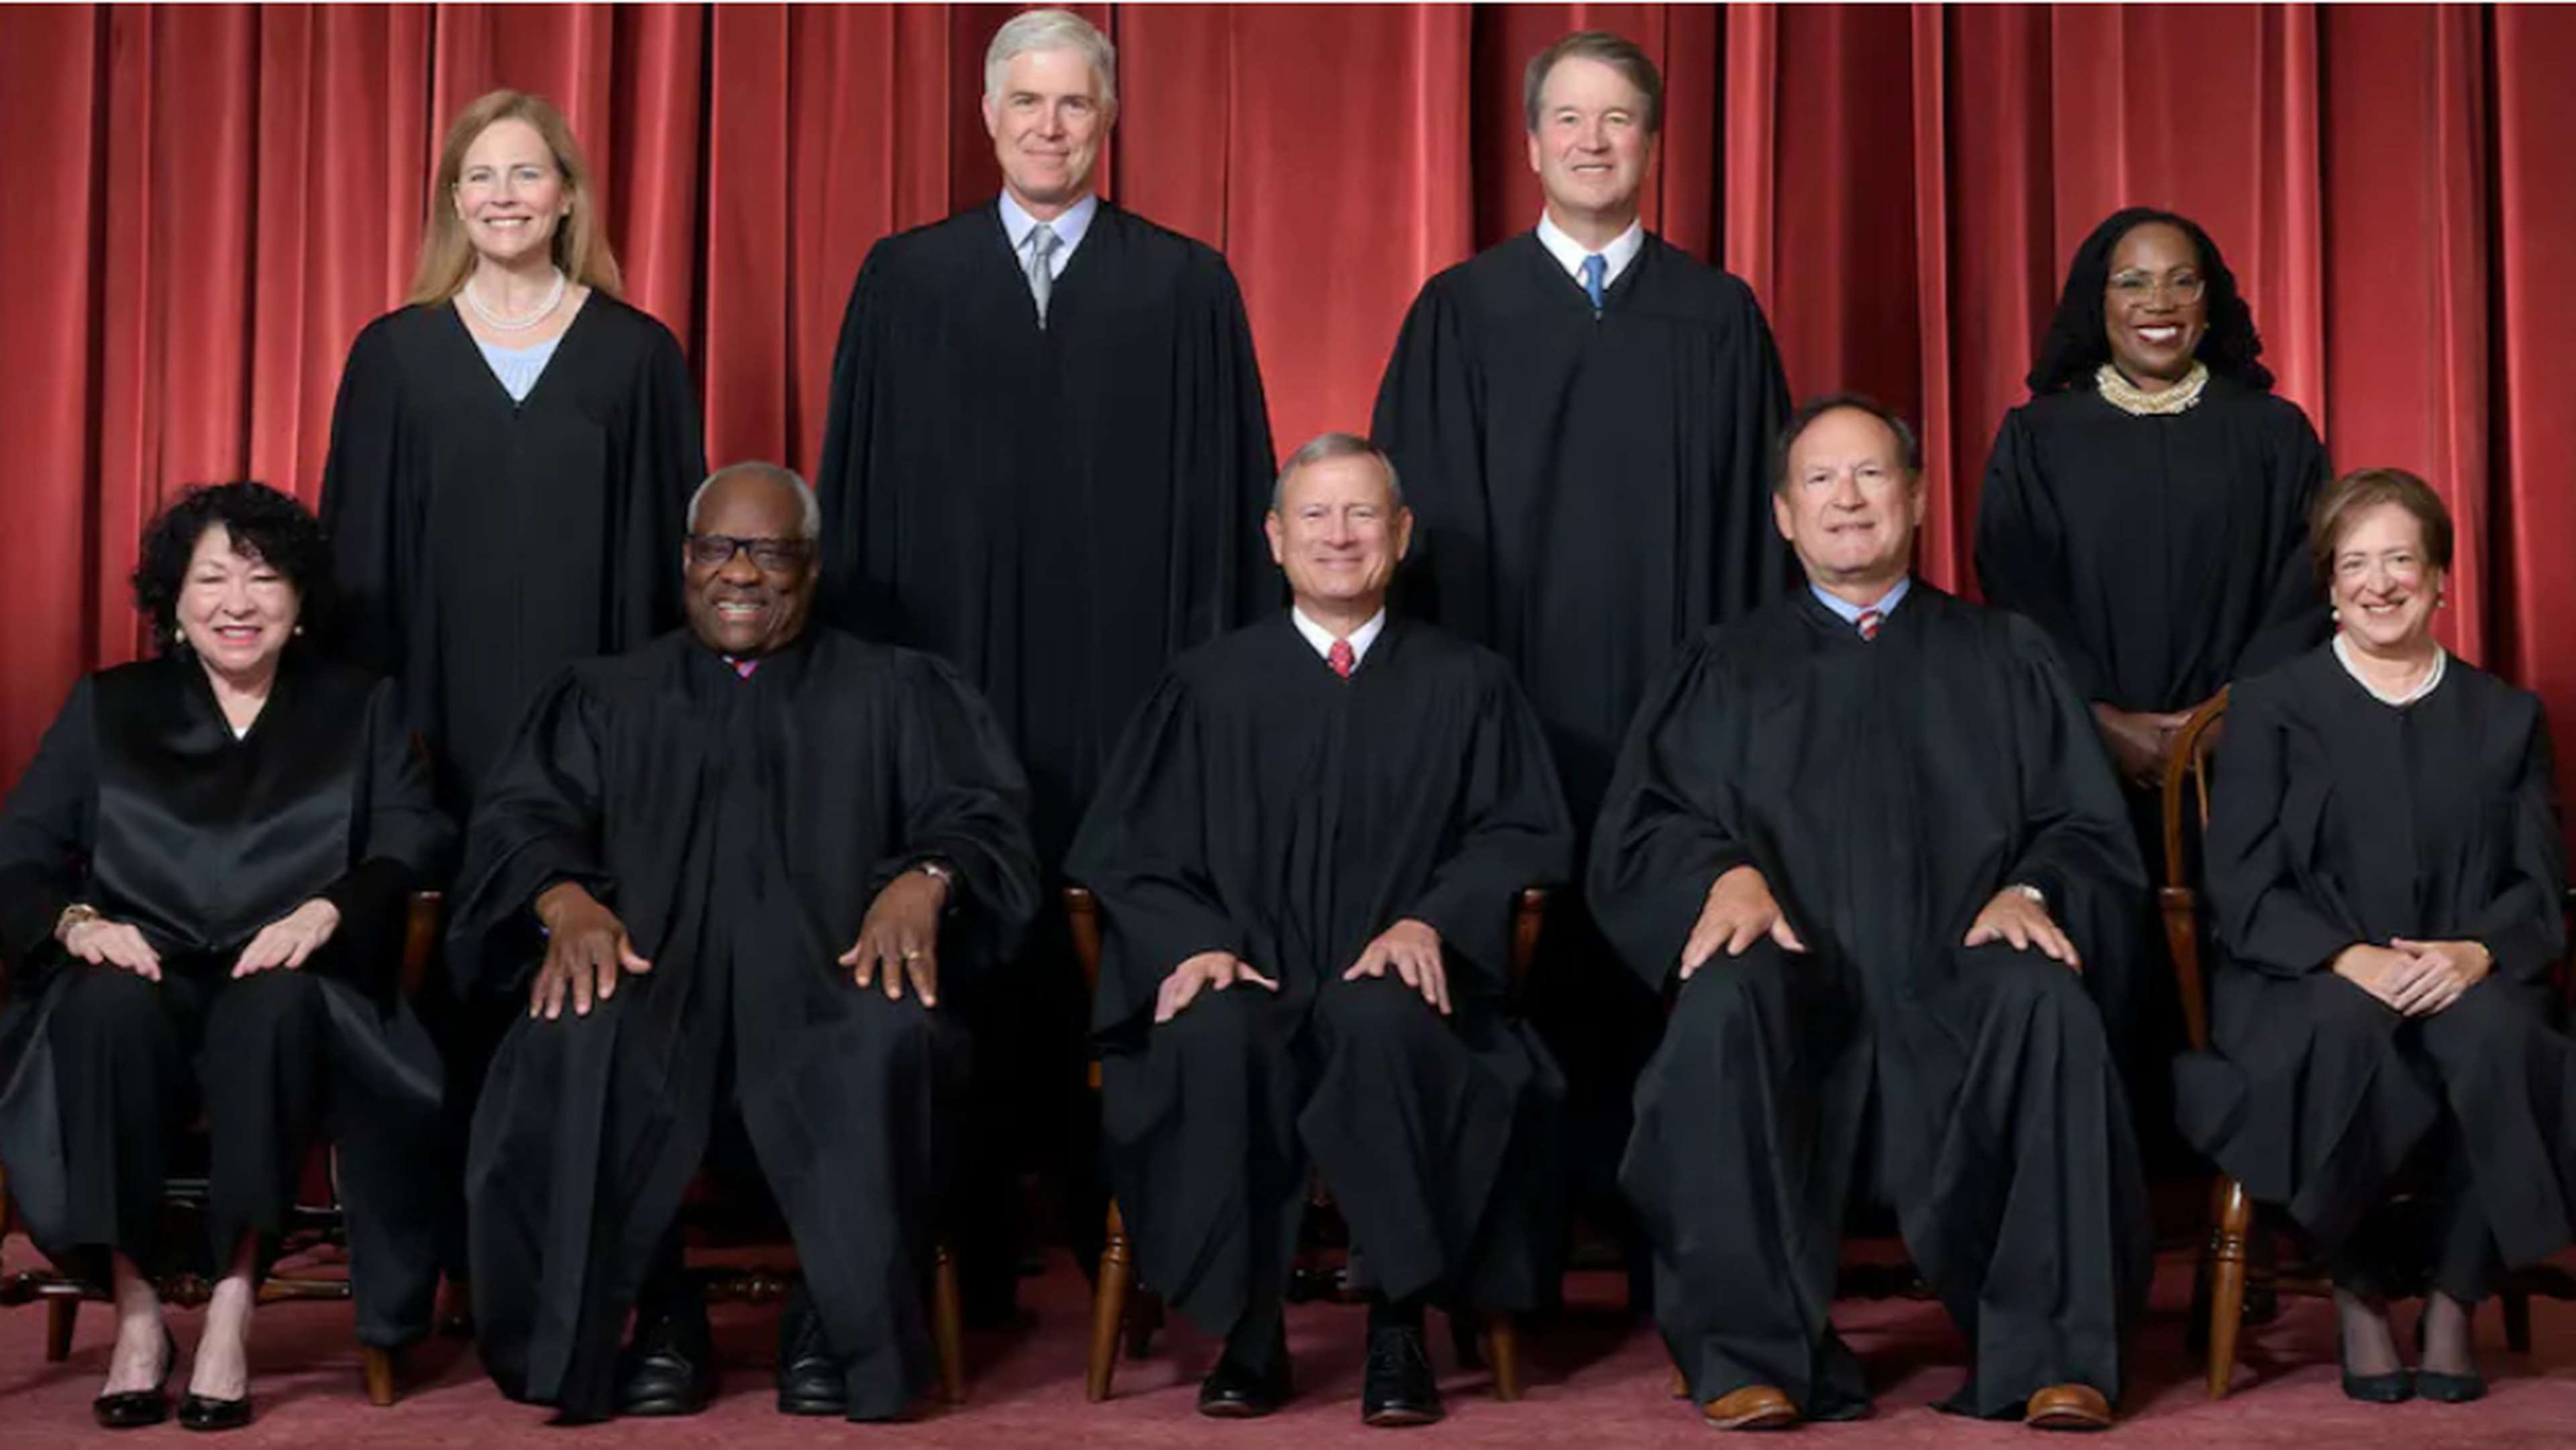 Les neuf membres actuels de la Cour suprême.